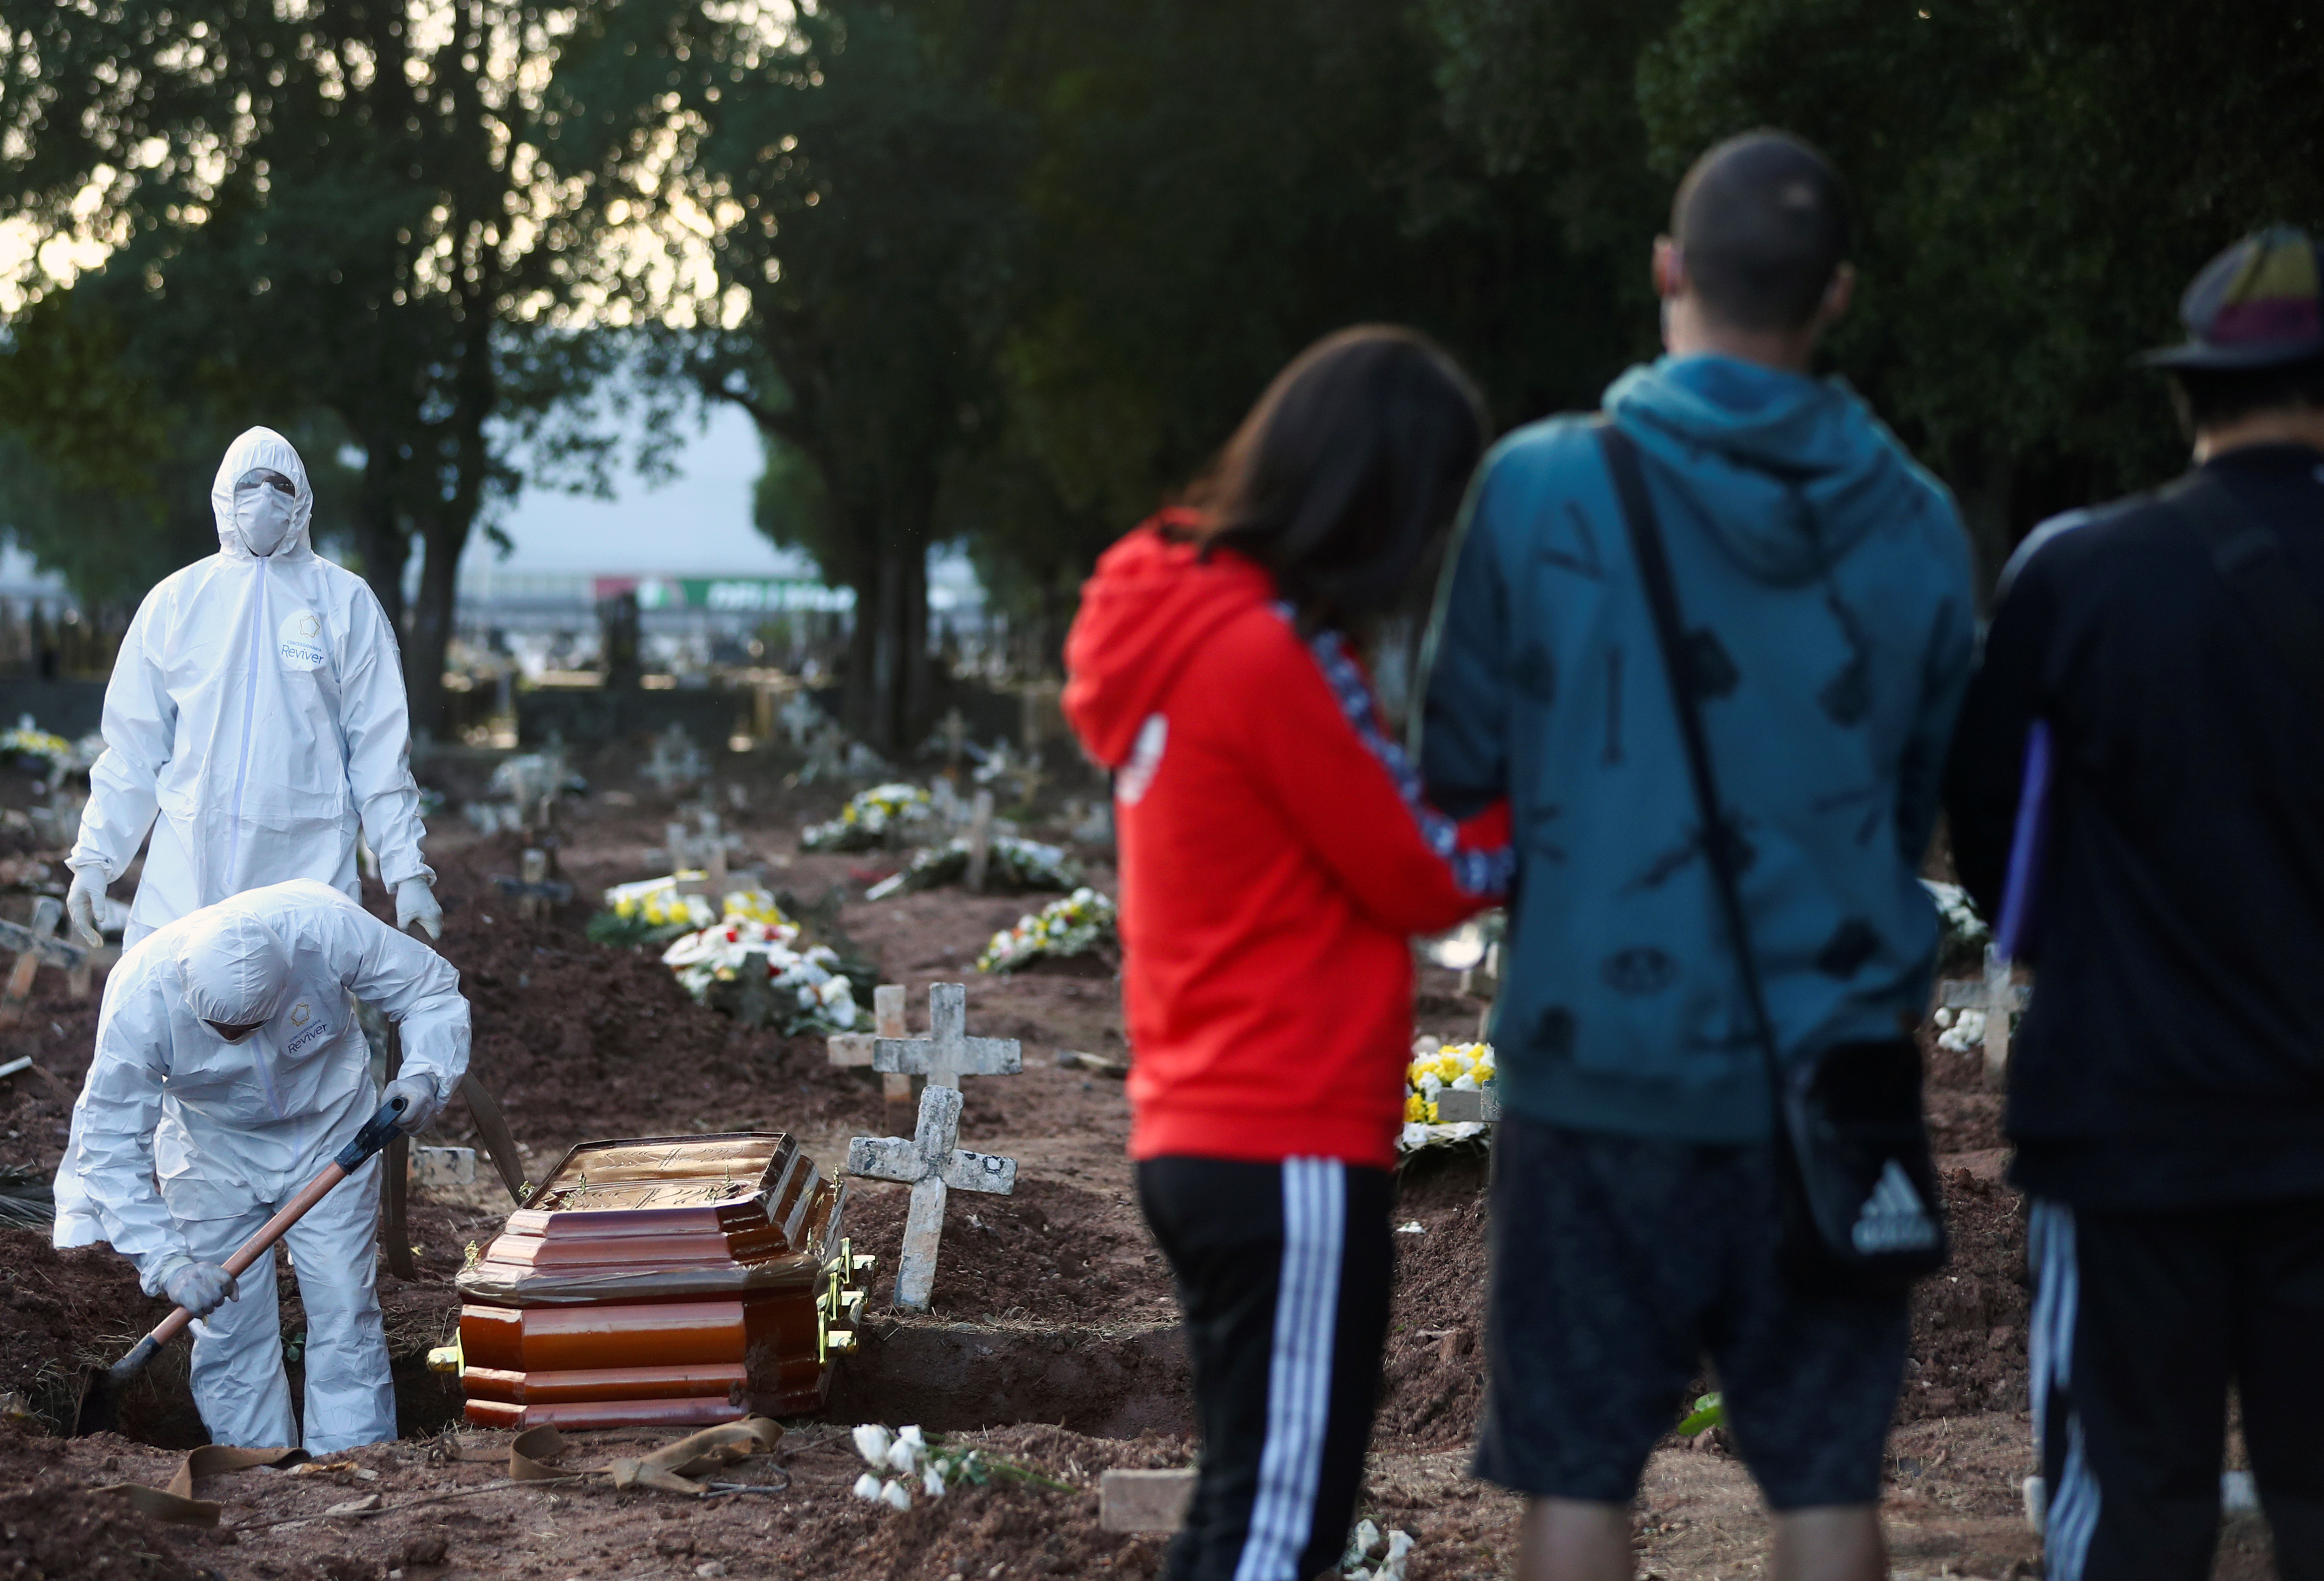 Escenas en un cementerio de Río de Janeiro. Foto: REUTERS/Pilar Olivares